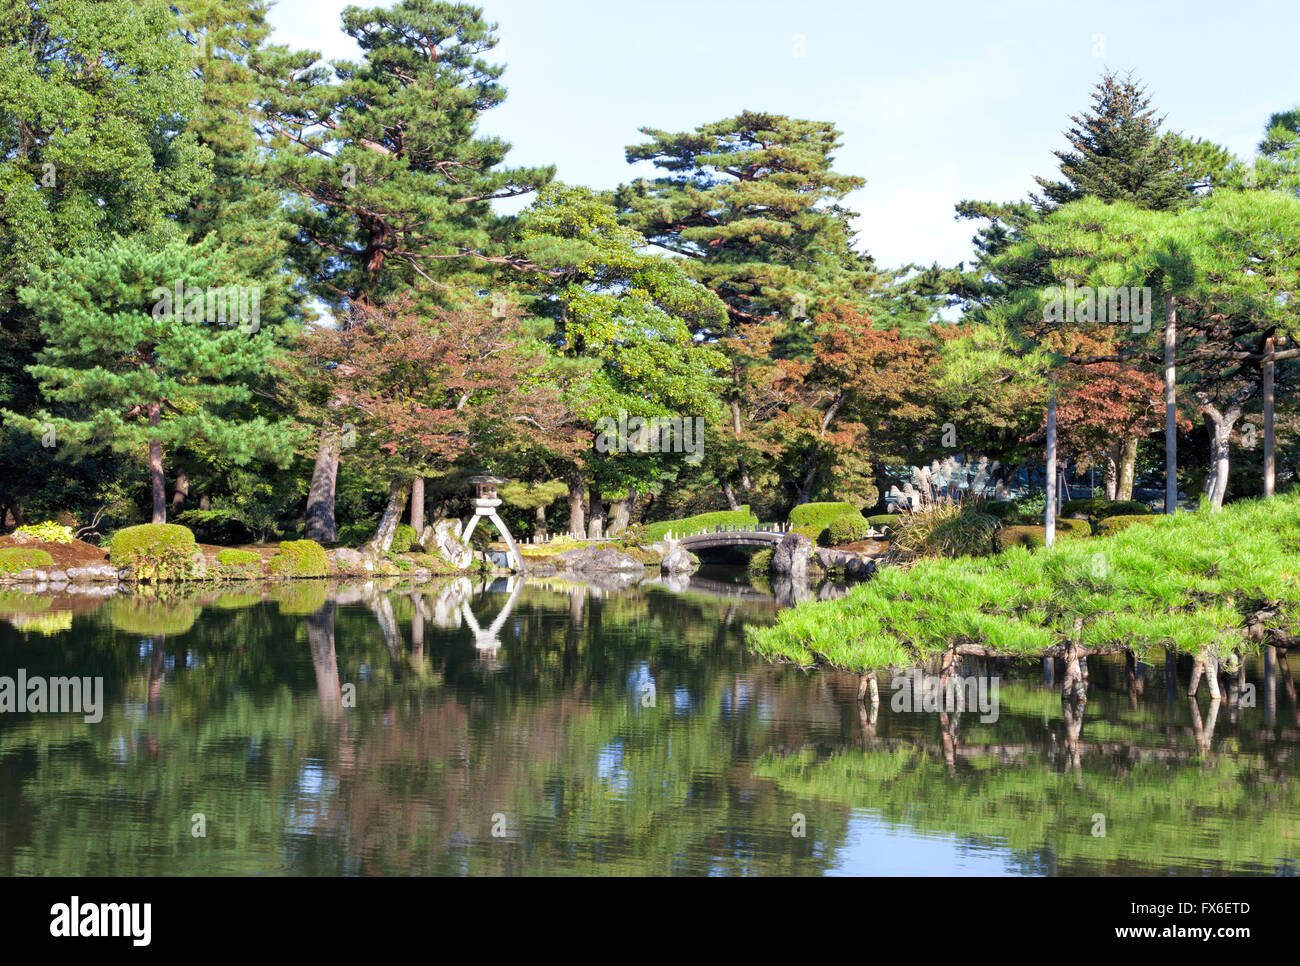 Japanese style garden park with stone bridge, lantern on a lake edge with green pine trees, autumn leaf trees Stock Photo